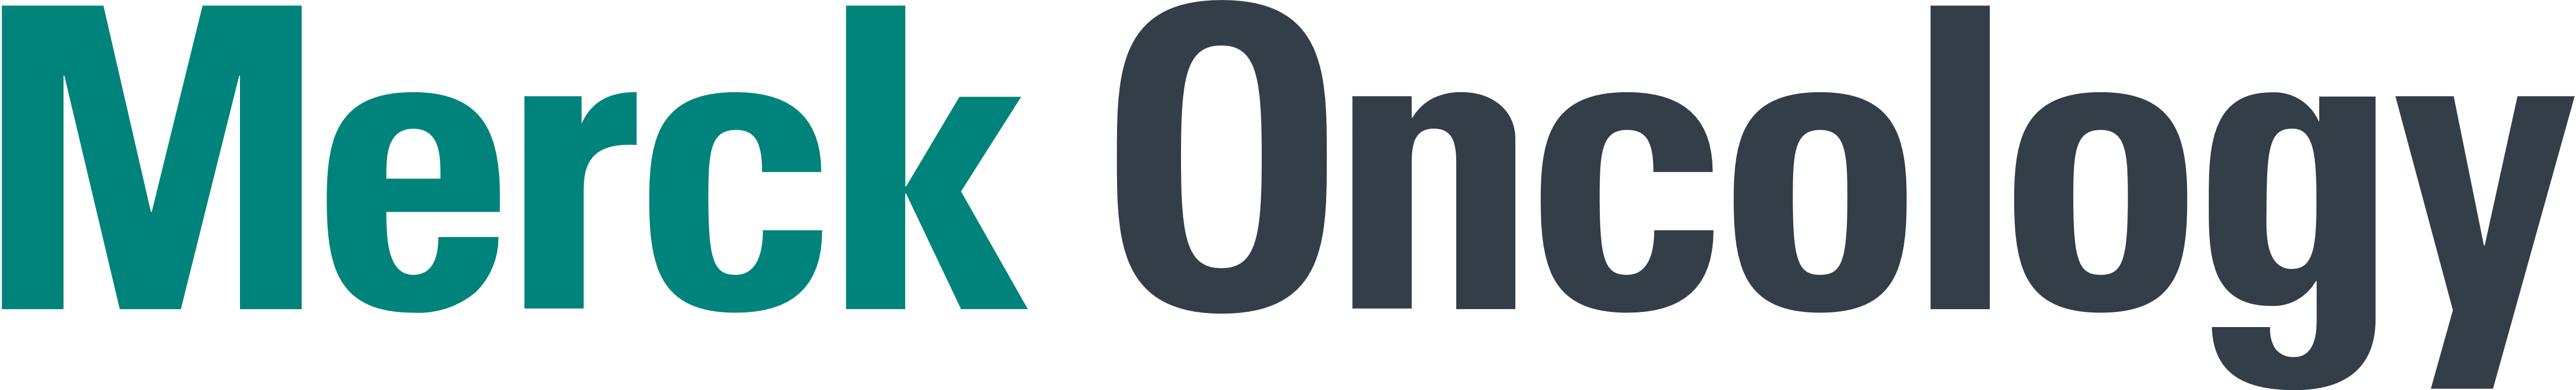 Merck Oncology logo, logotype